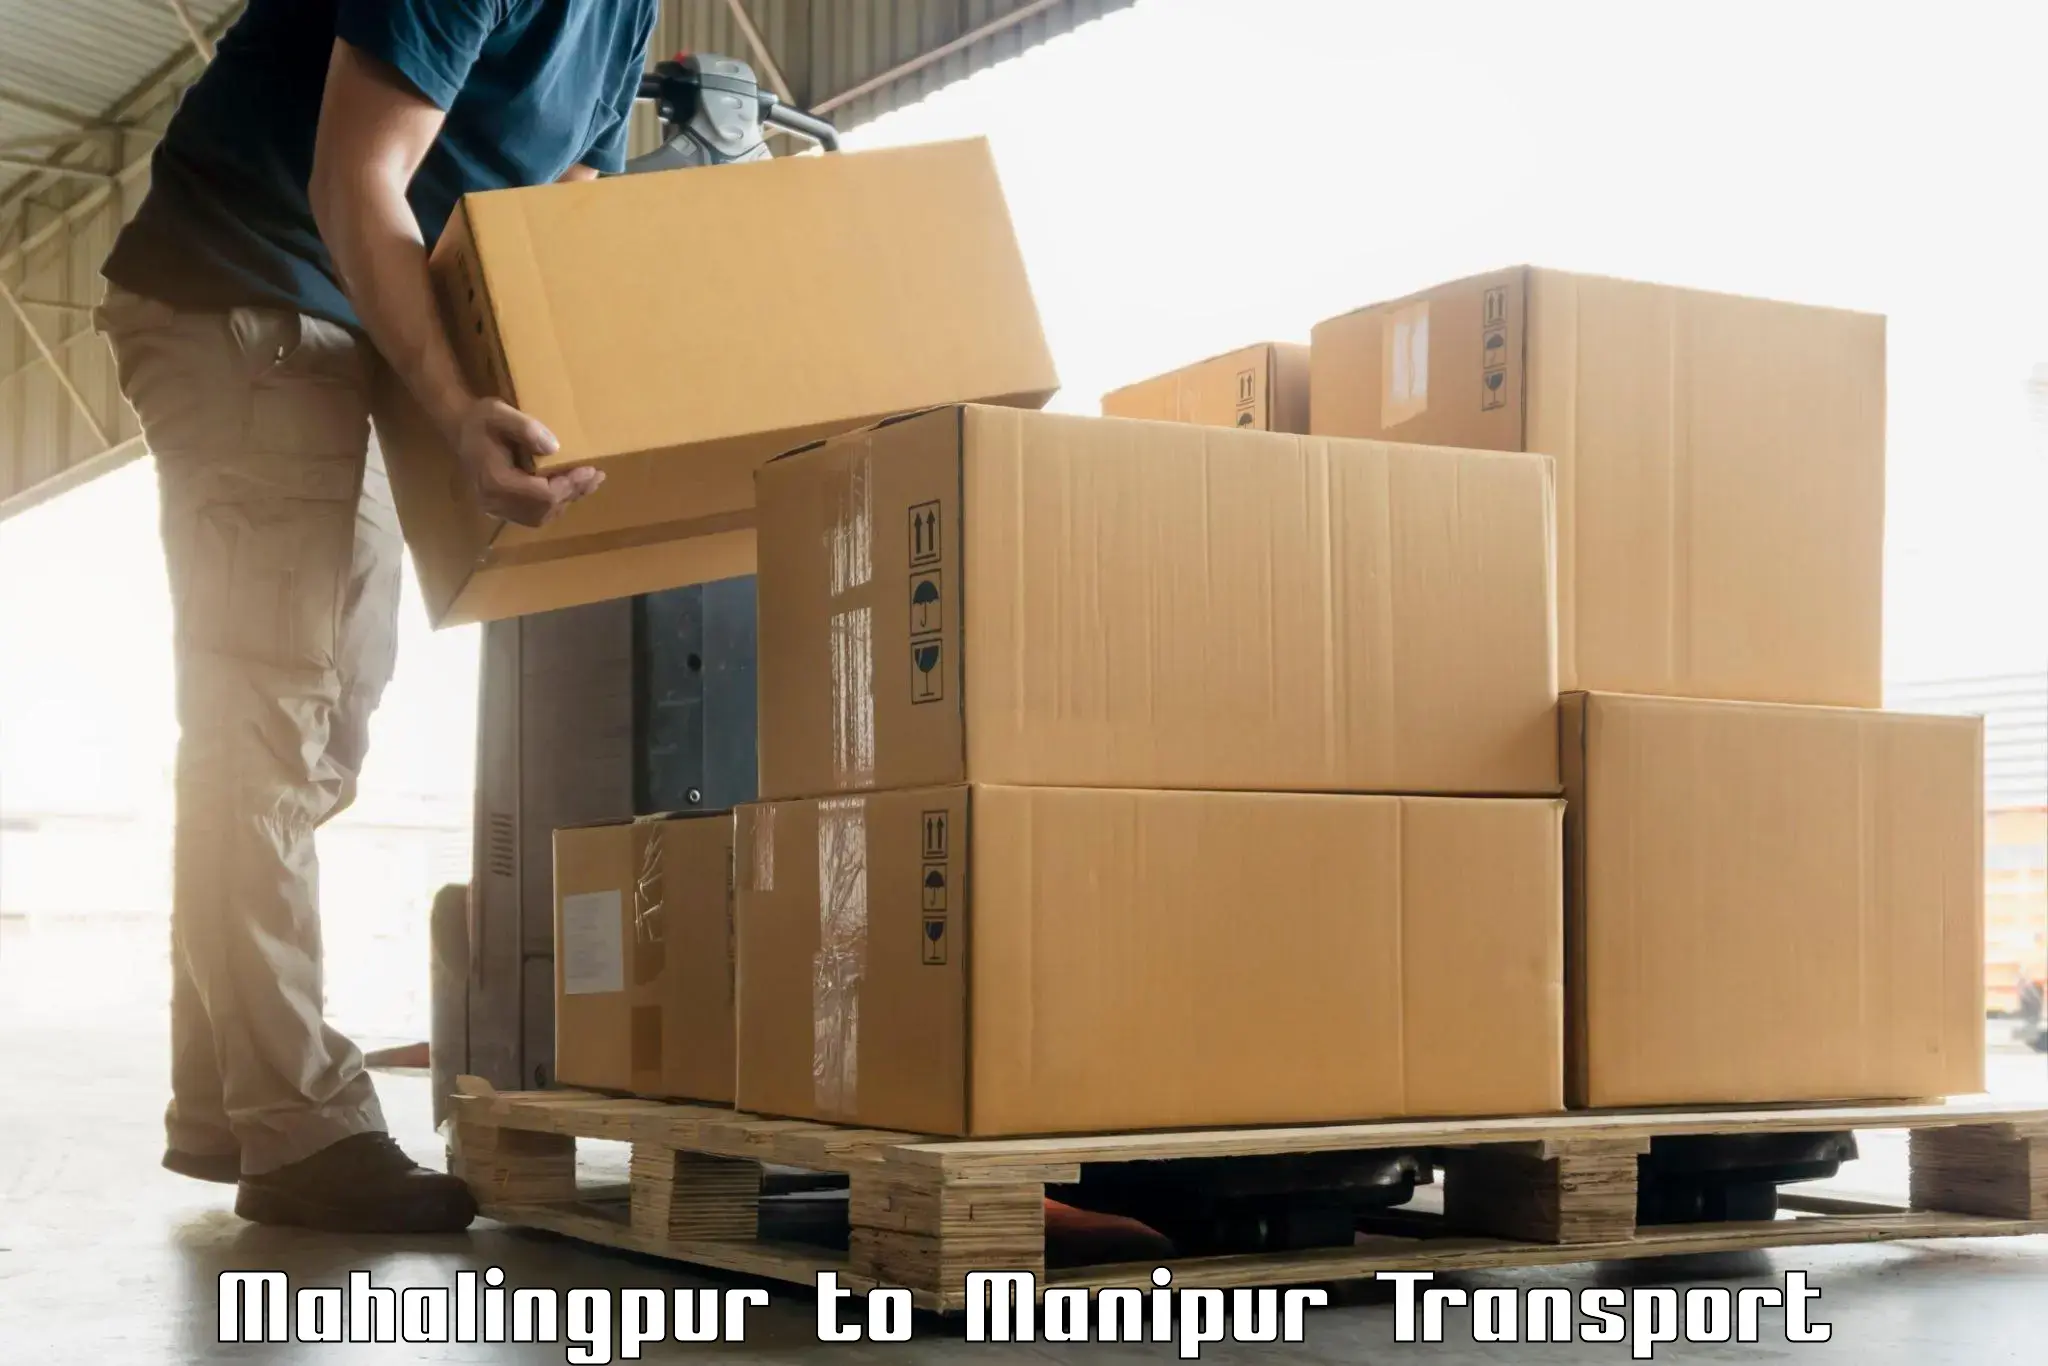 Cycle transportation service Mahalingpur to Moirang